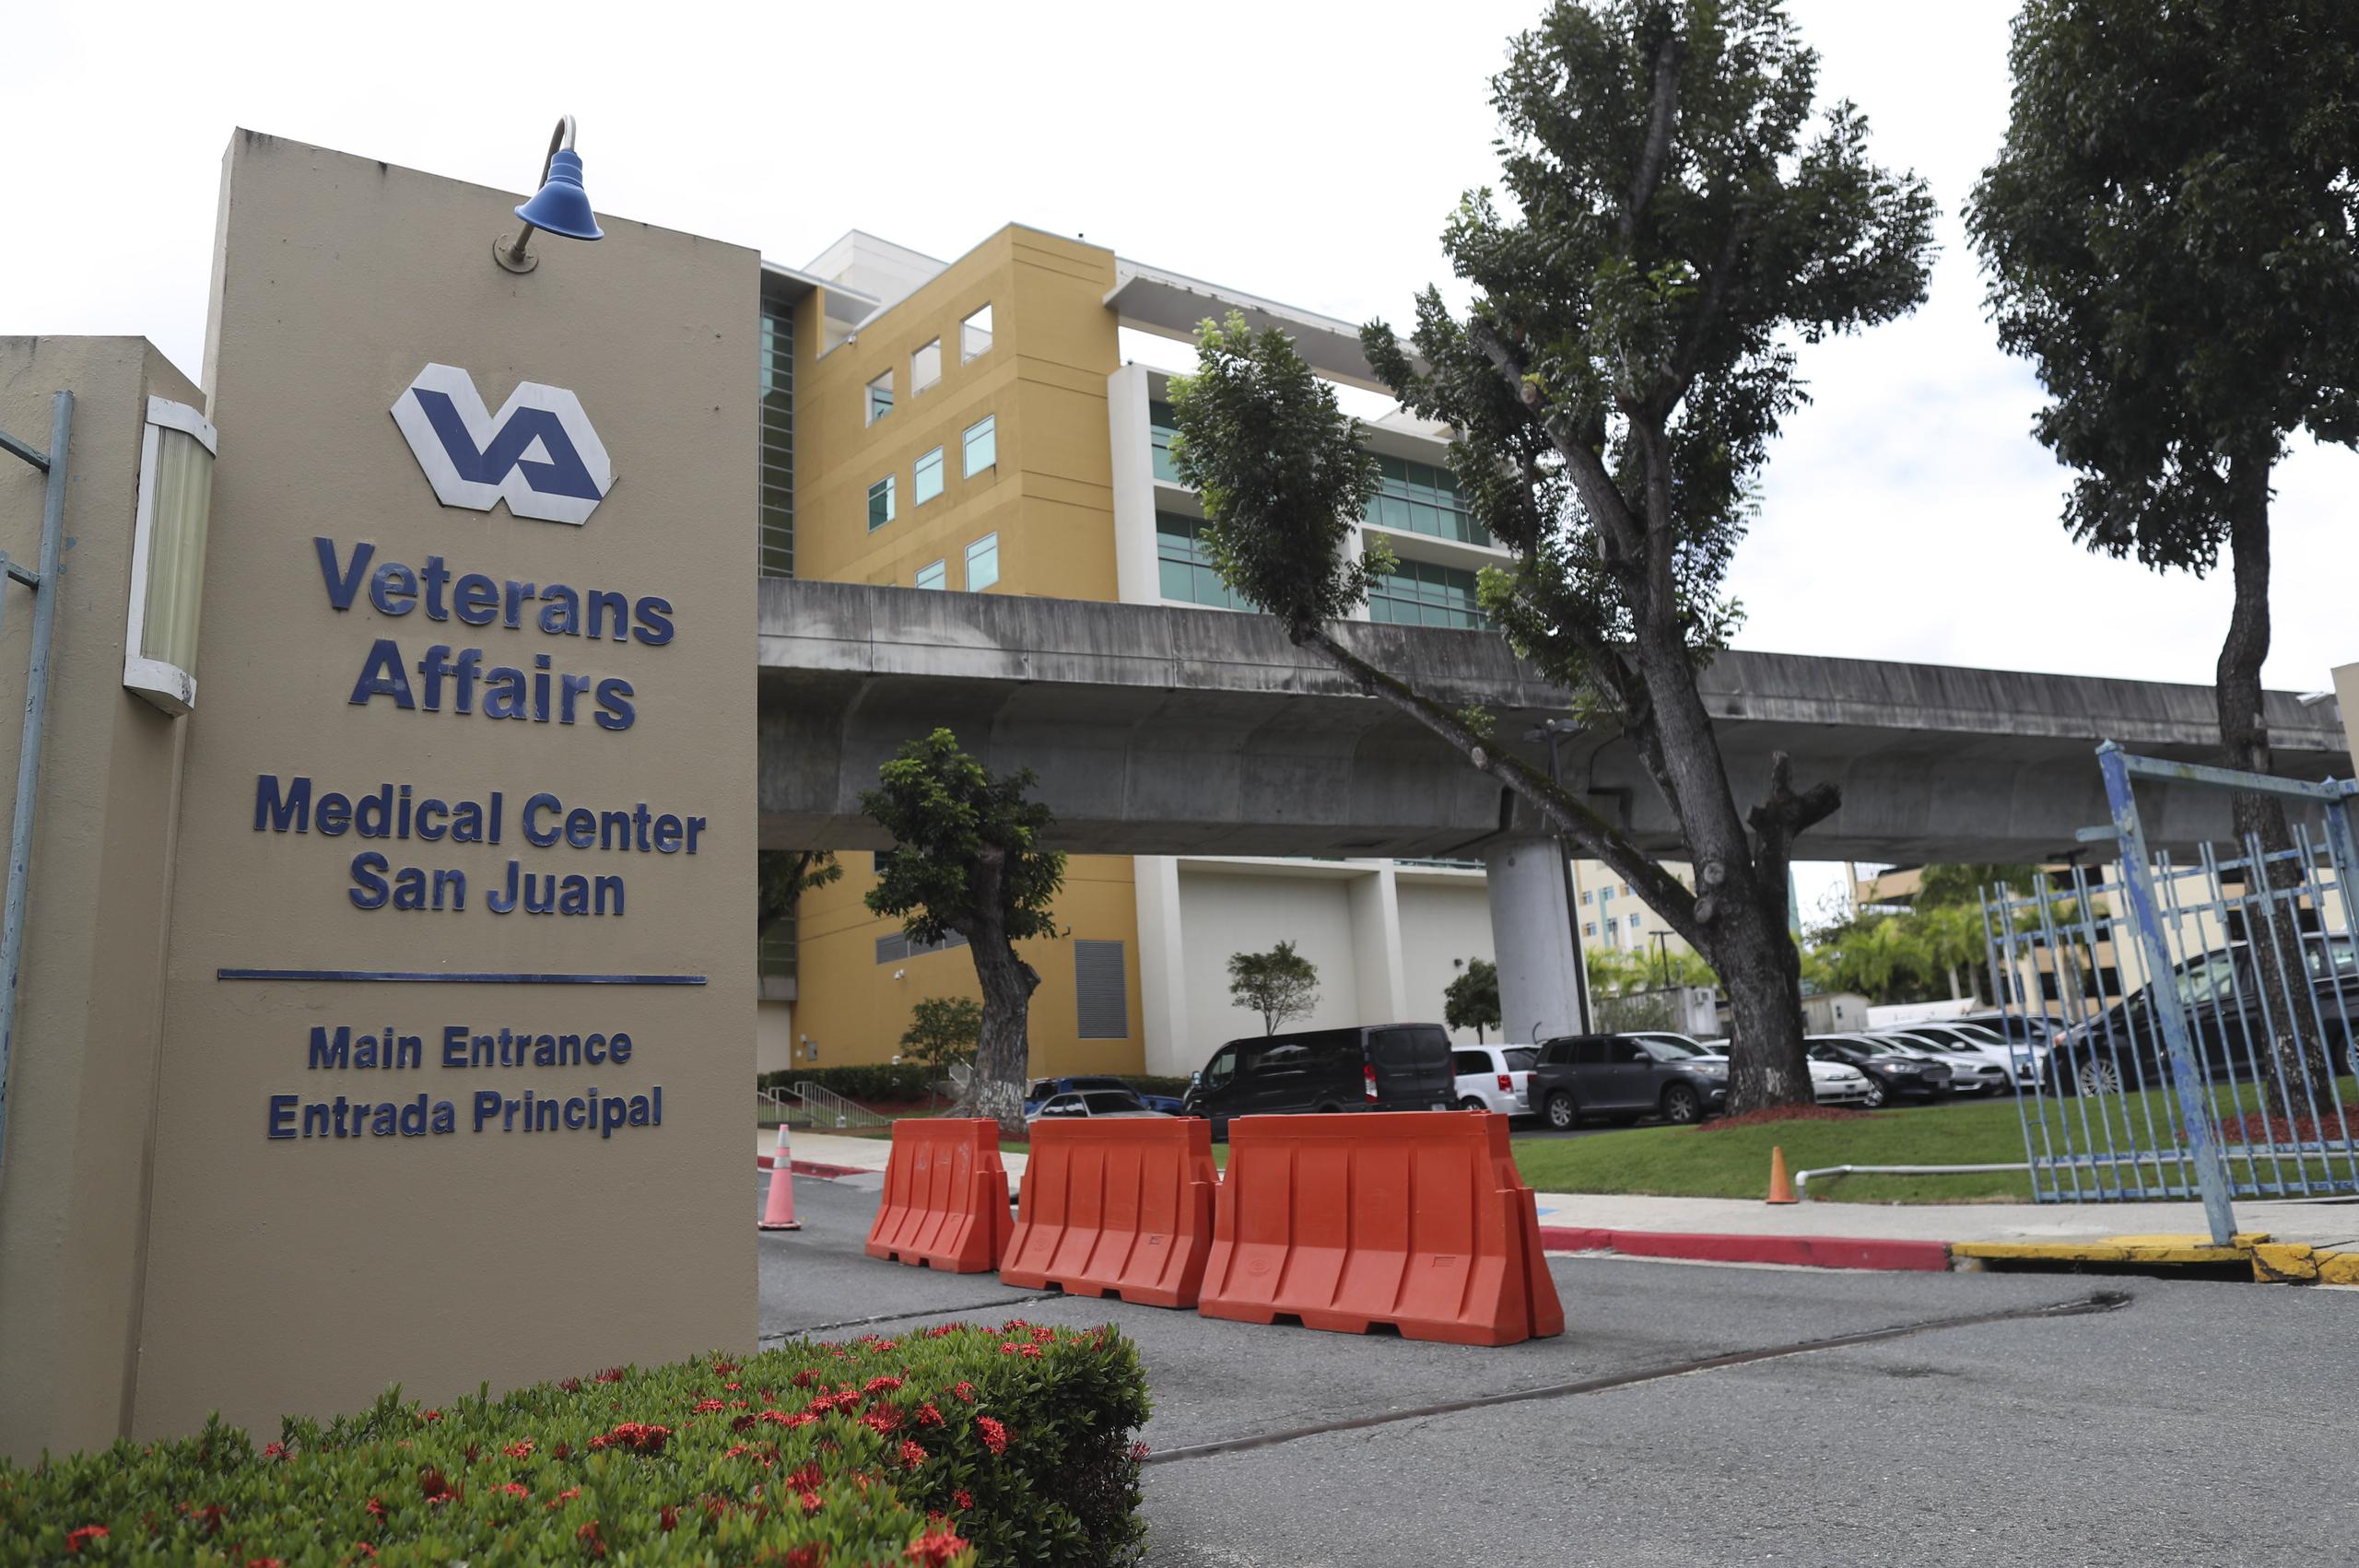 El Hospital de Veteranos cuenta con una matrícula activa de aproximadamente 60 mil veteranos, registra 1,000,000 de visitas ambulatorias y 10,000 admisiones para cuidado hospitalario anualmente.